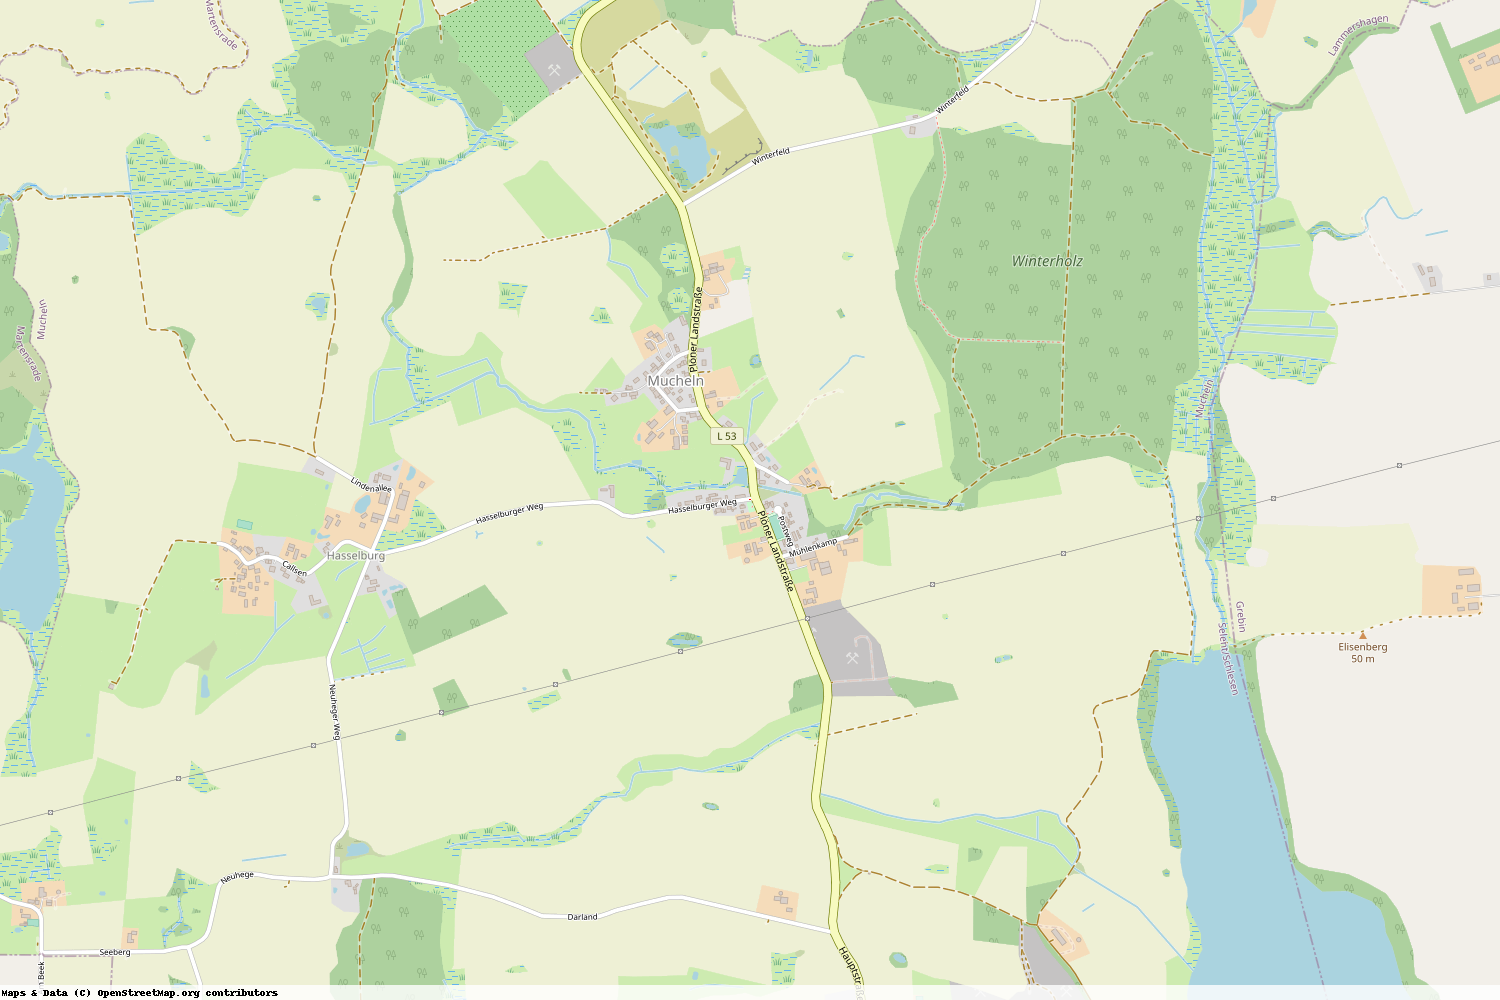 Ist gerade Stromausfall in Schleswig-Holstein - Plön - Mucheln?